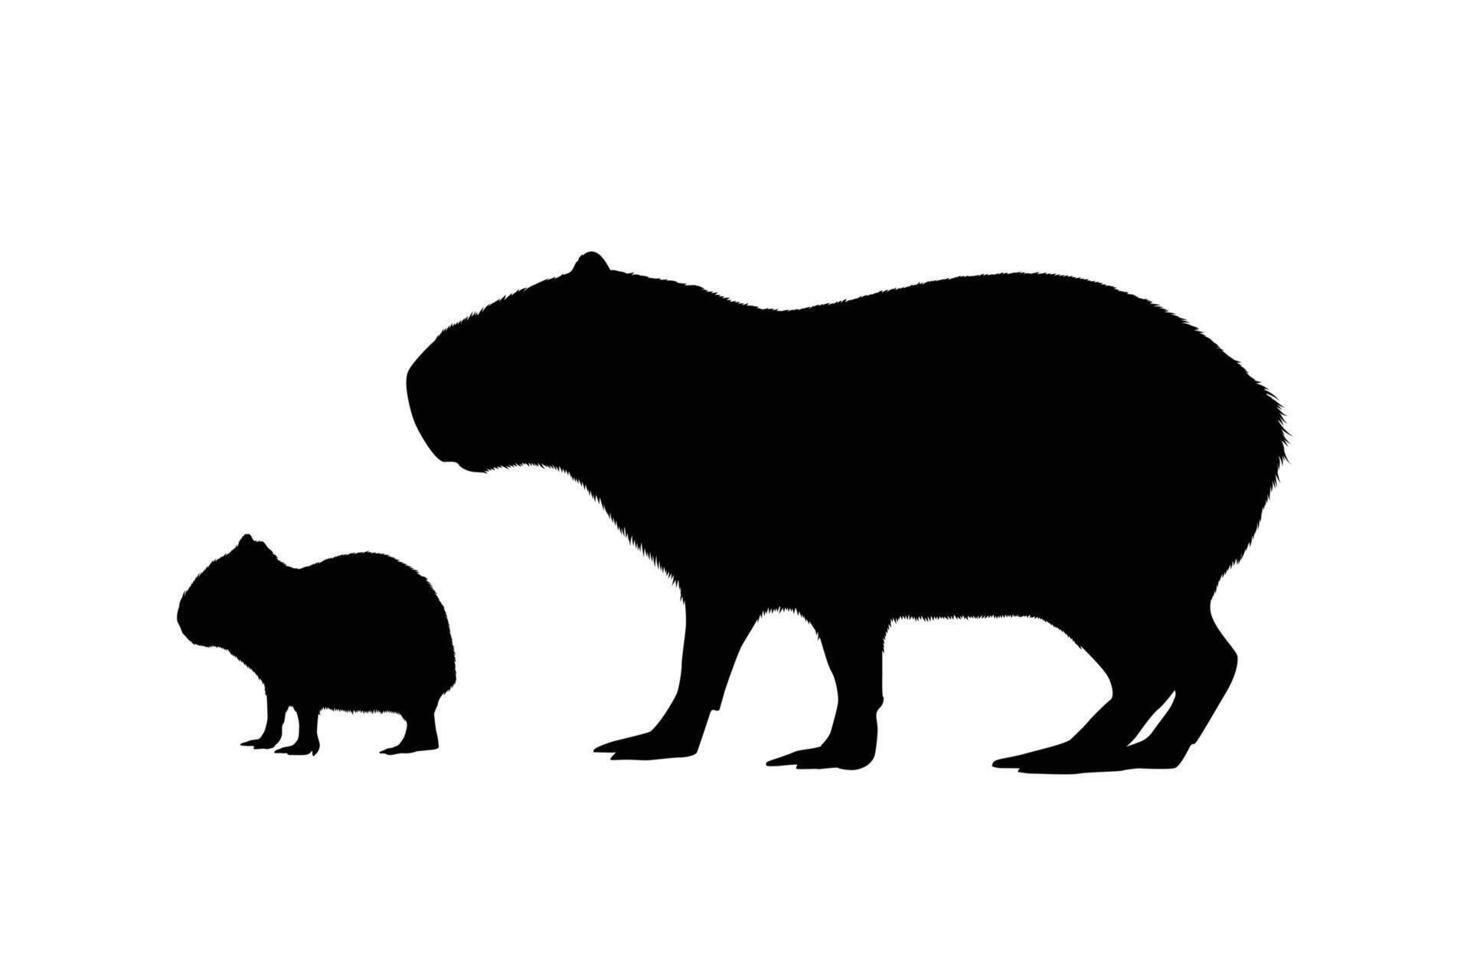 Capybara silhouette, adult capybara with baby capybara vector